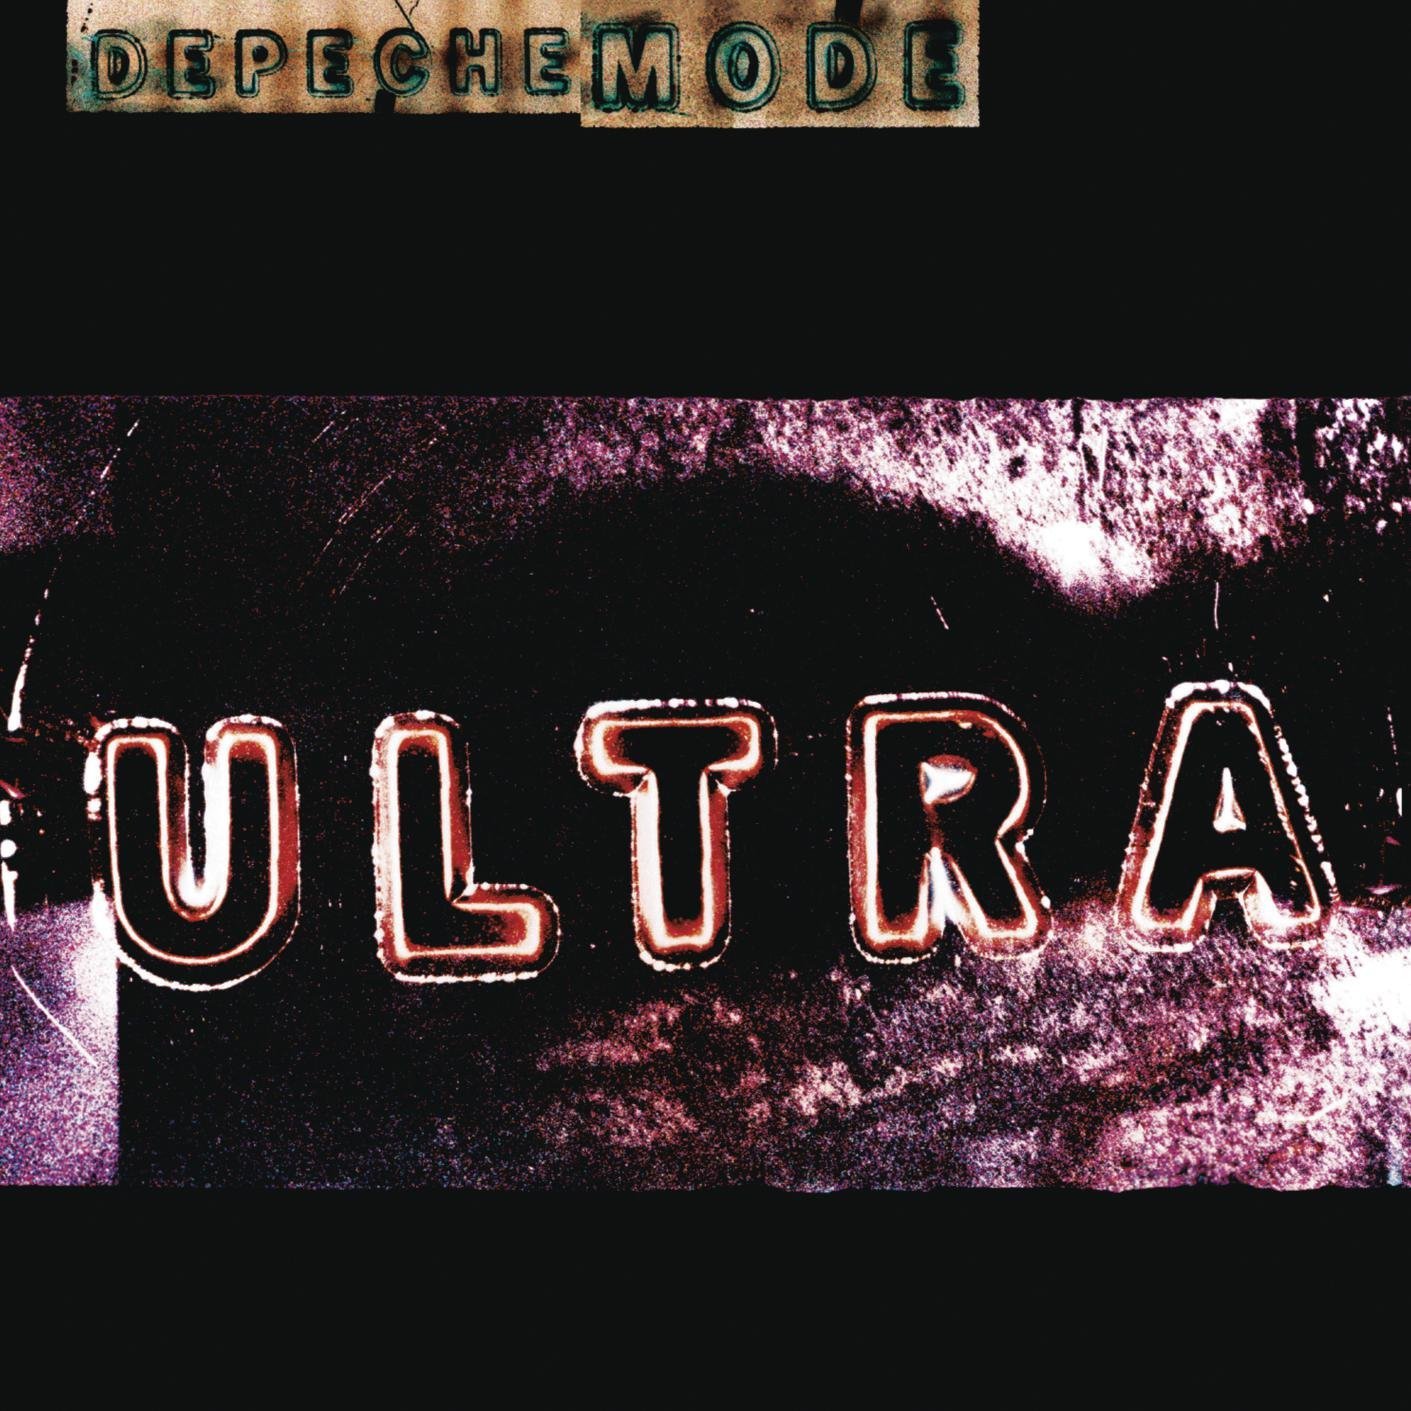 Depeche Mode "Ultra" LP